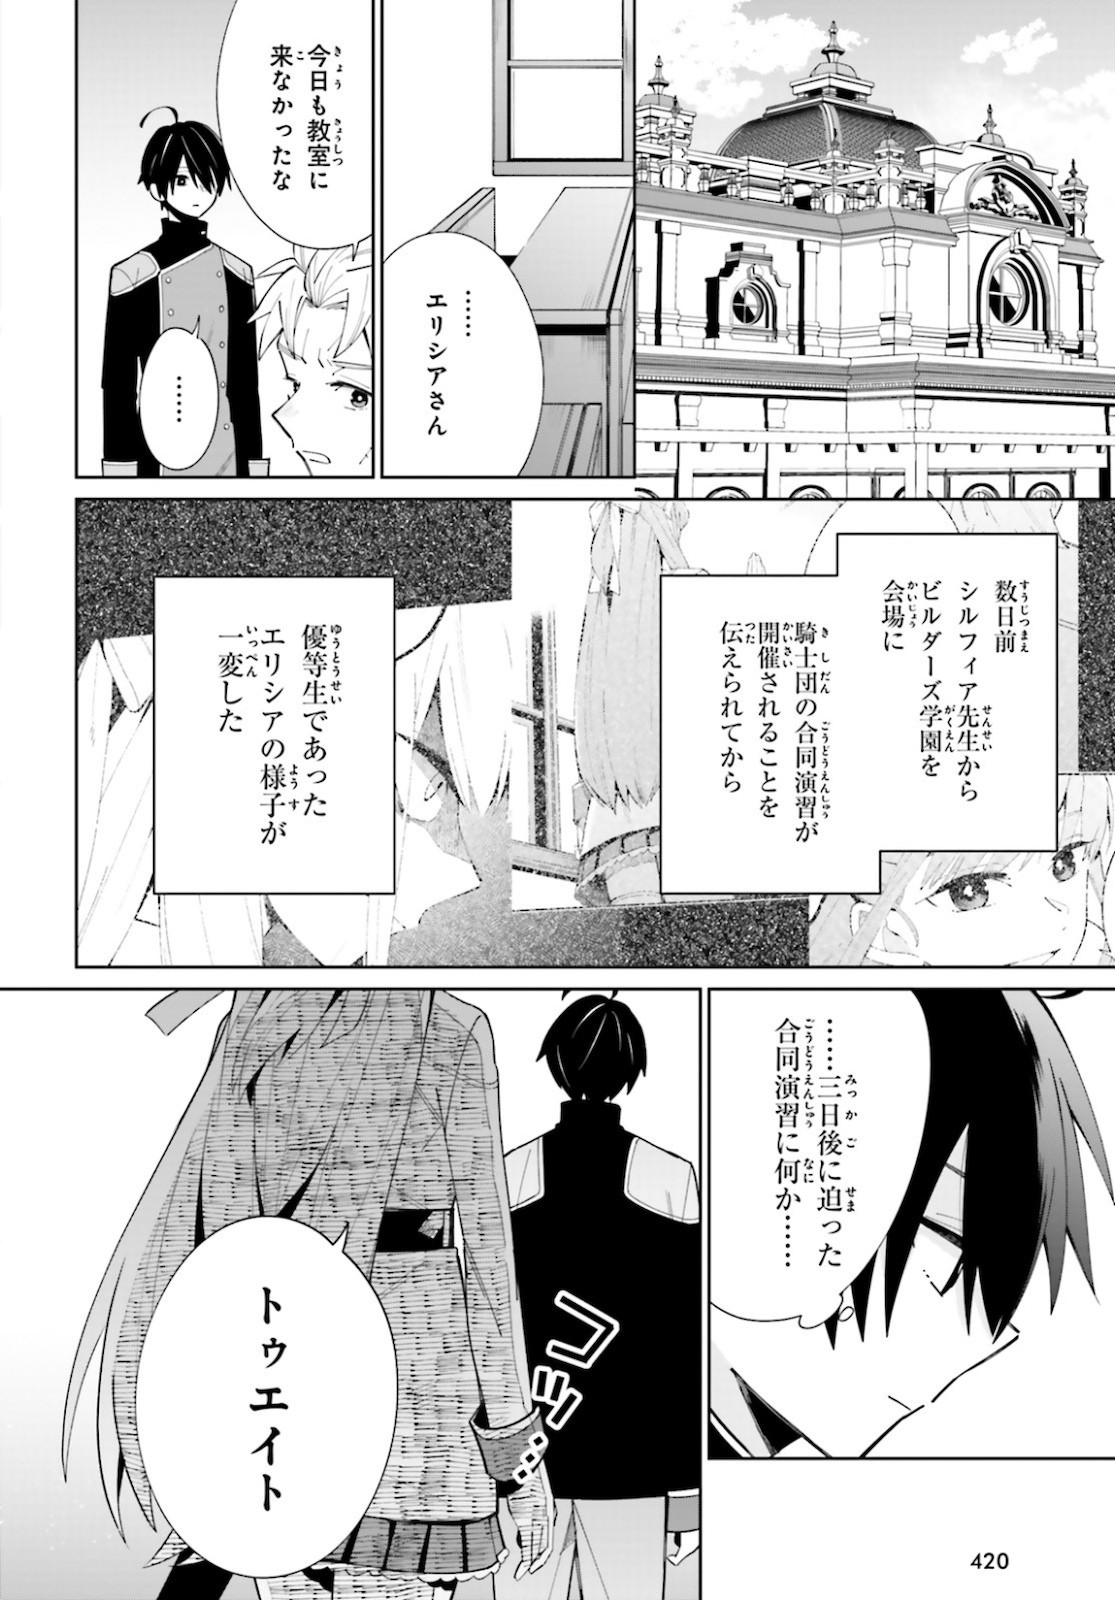 Kage-no-Eiyuu-no-Nichijou-tan-Ichi-no-Yuusha-no-Ura-de-An'yaku-Shite-ita-Saikyou-no-Eijento-Soshiki-ga-Kaitai-sareta-no-de-Shoutai-Kakushite-Hito-nami-no-Nichijou-o-Ouka-suru - Chapter 07 - Page 1